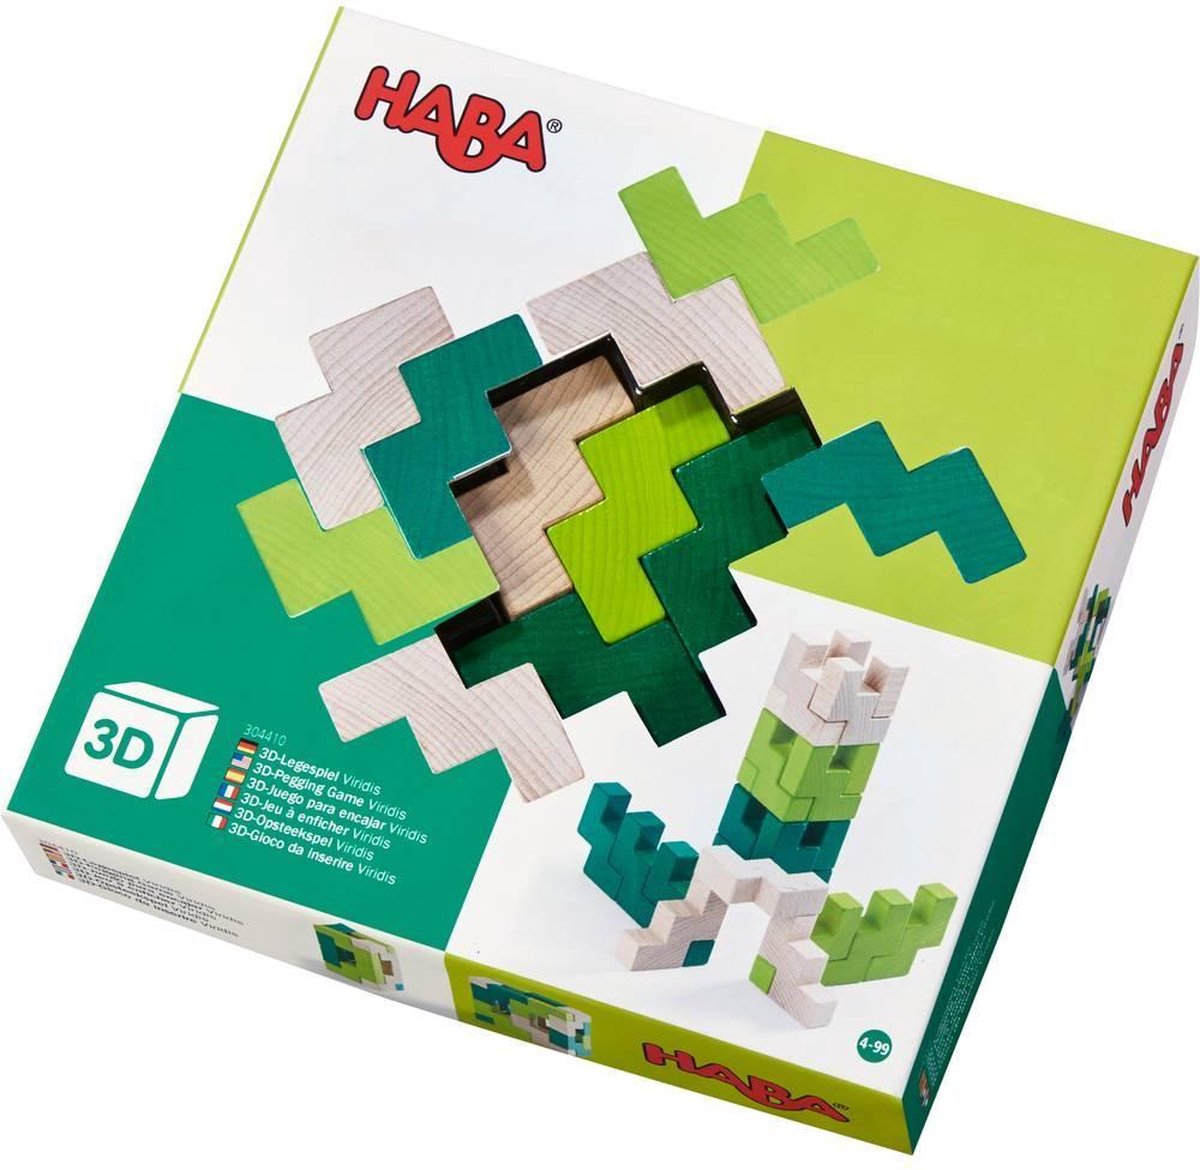 HABA Viridis 3D compositiespel 21 delig - Groen